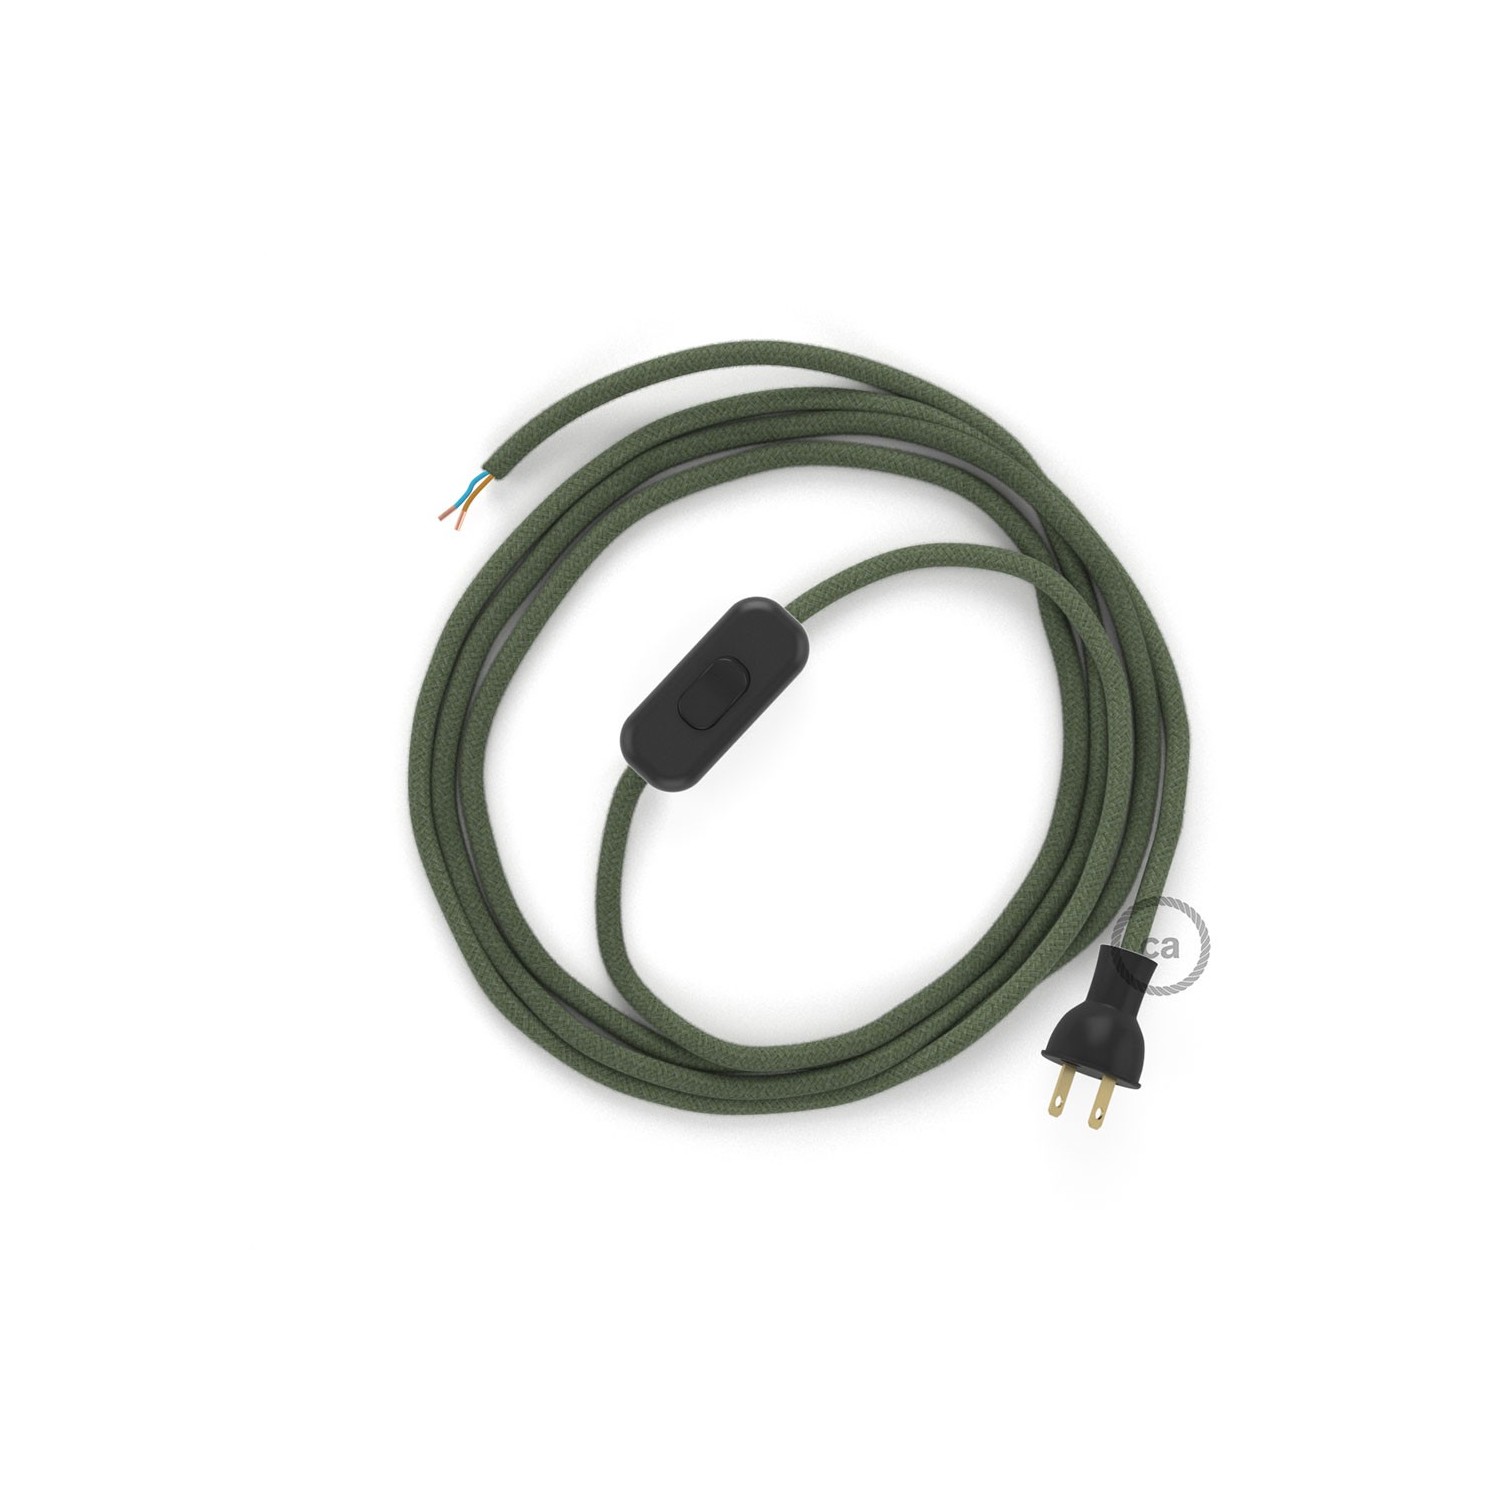 Cableado para lámpara de mesa, cable RC63 Algodón Verde Gris 1,8 m. Elige el color de la clavija y del interruptor!